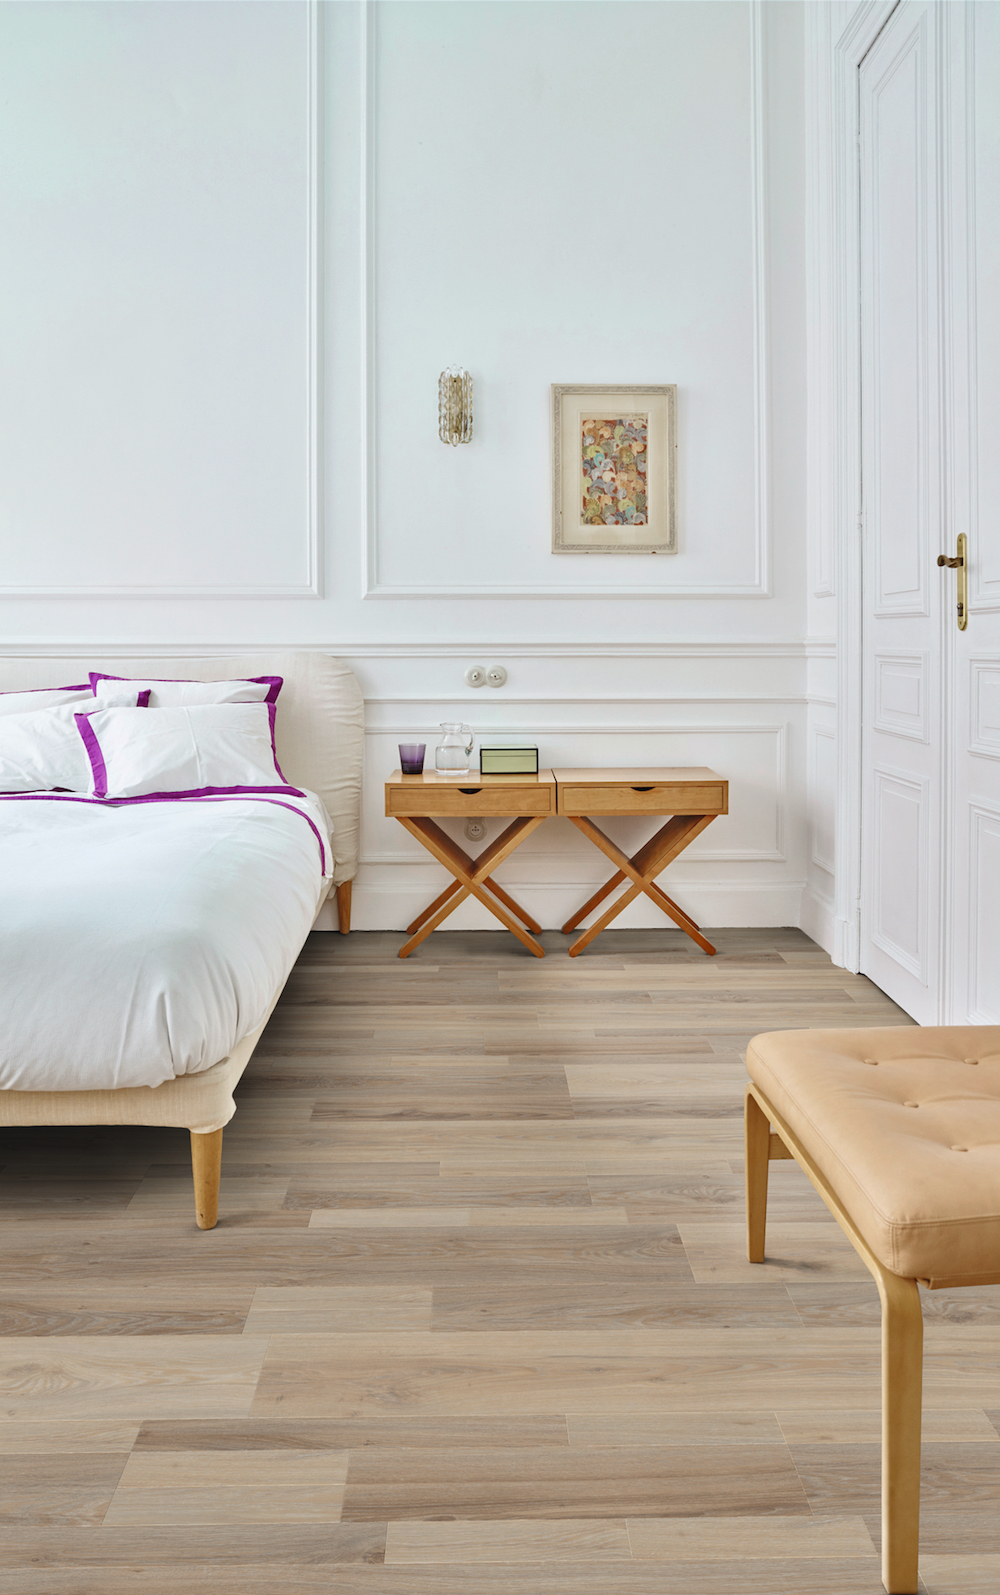 Moduleo Moods vinyl vloer met houtlook in de slaapkamer #interieur